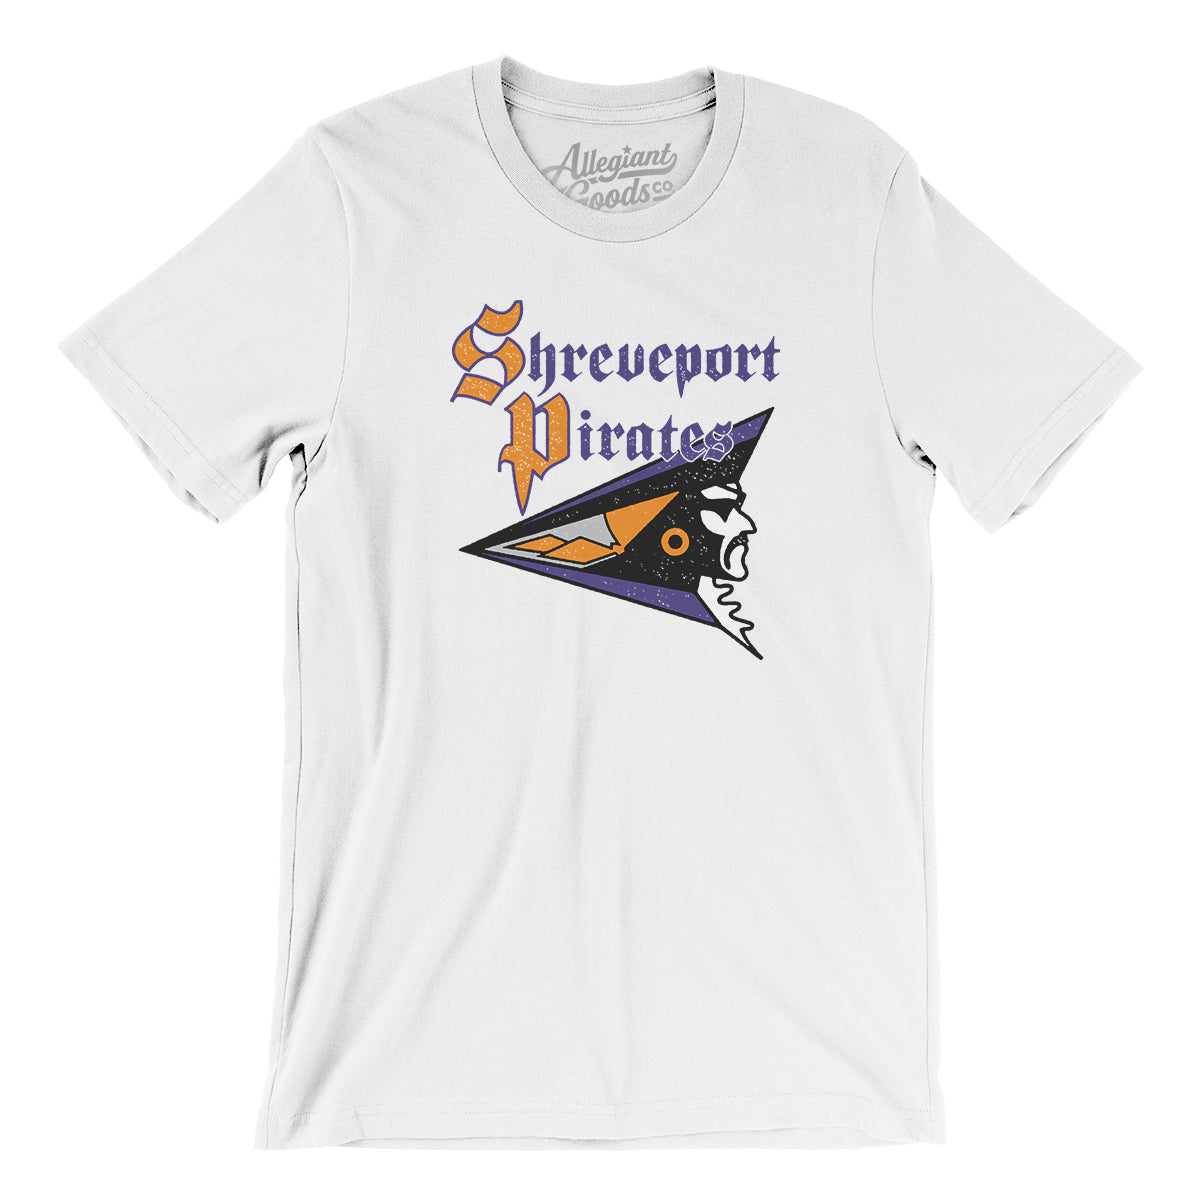 Mtr Shreveport Pirates Football Men/Unisex T-Shirt White / 2XL